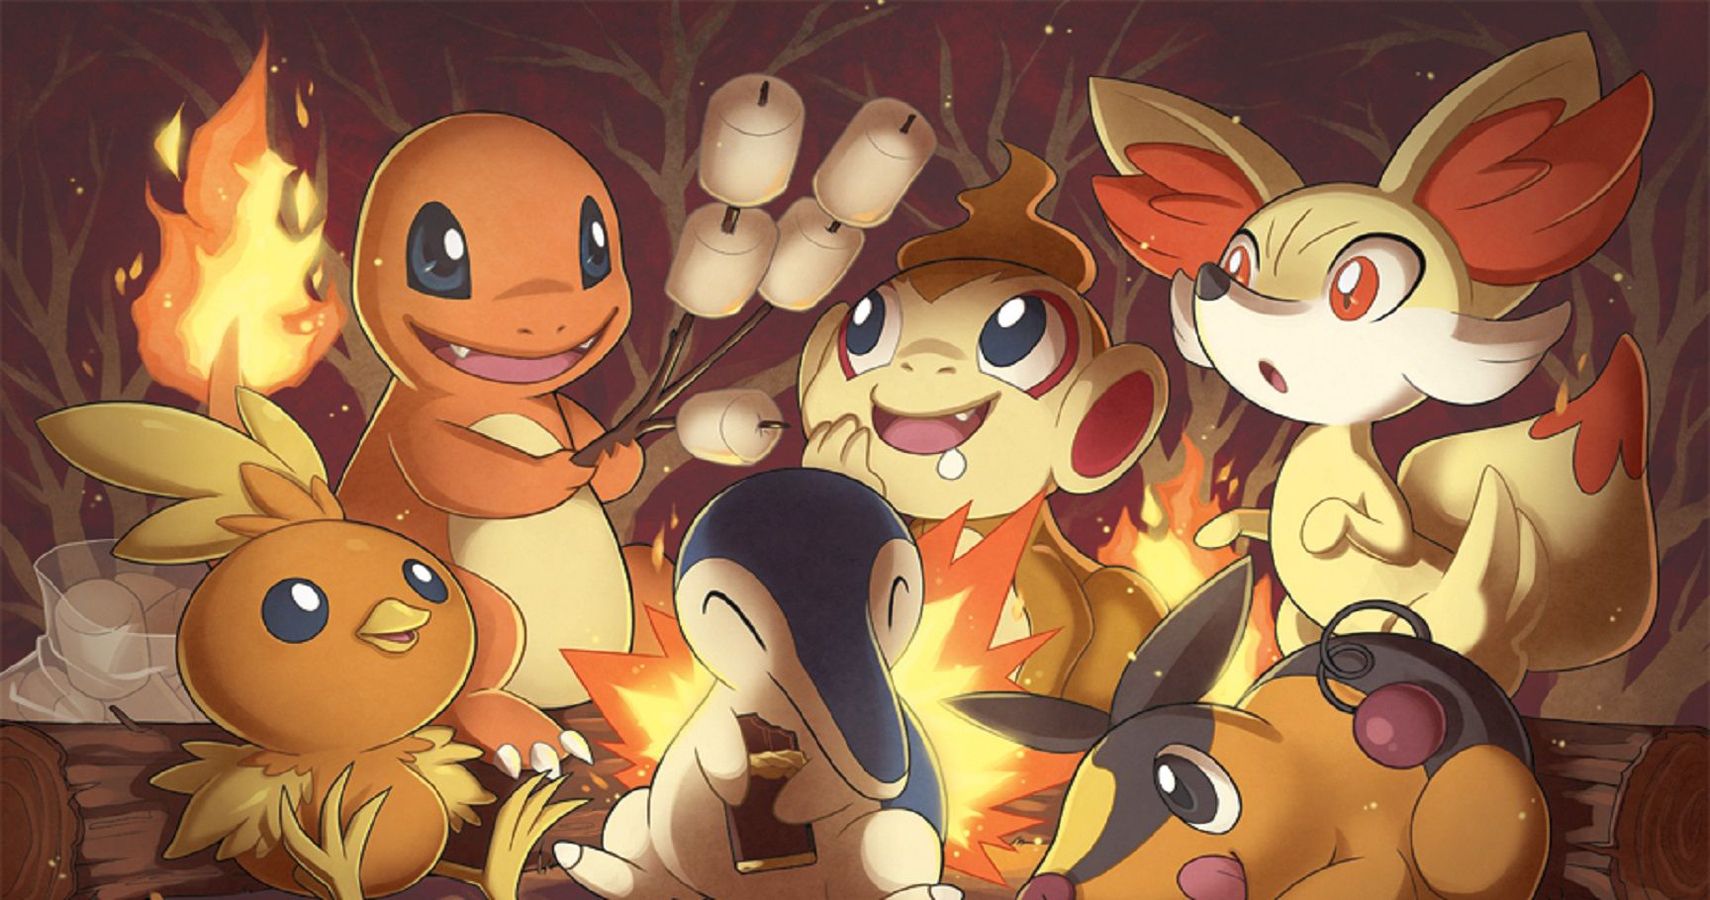 Pokémon 10 Pieces of Fire Pokémon Fan Art We Love - pokemonwe.com